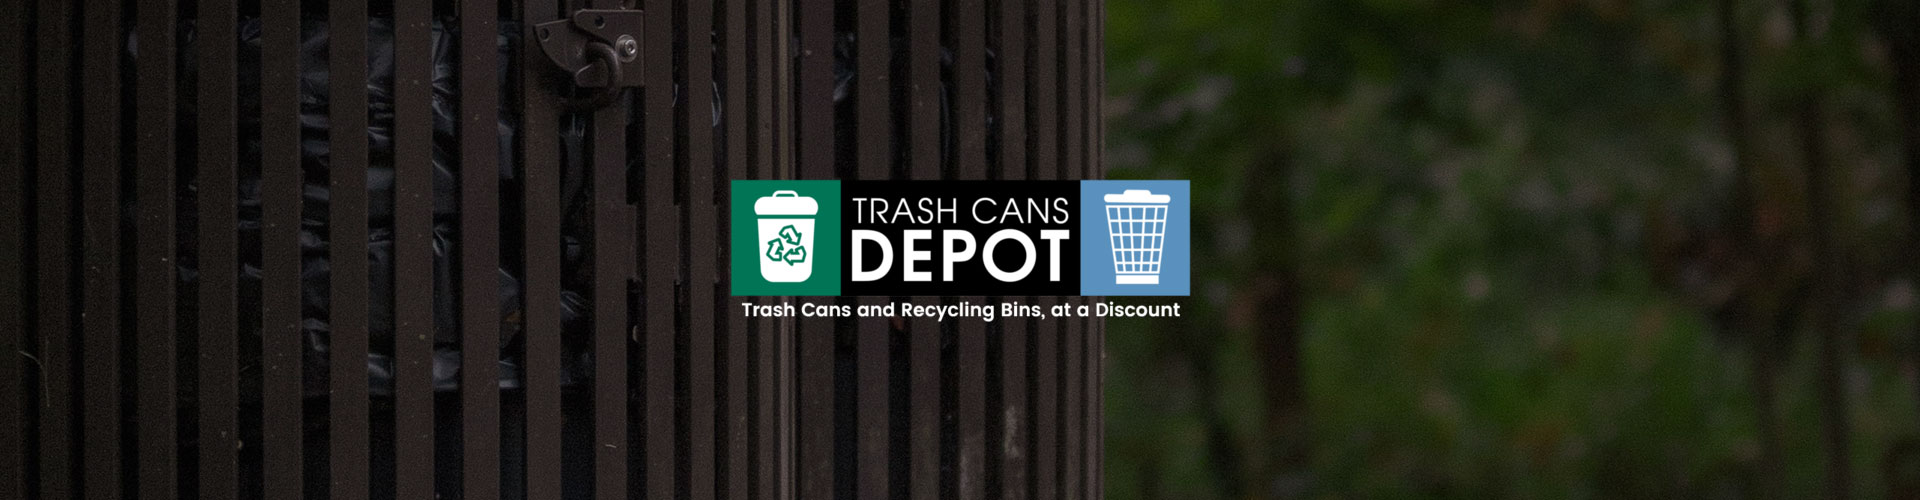 Trash Cans Depot banner